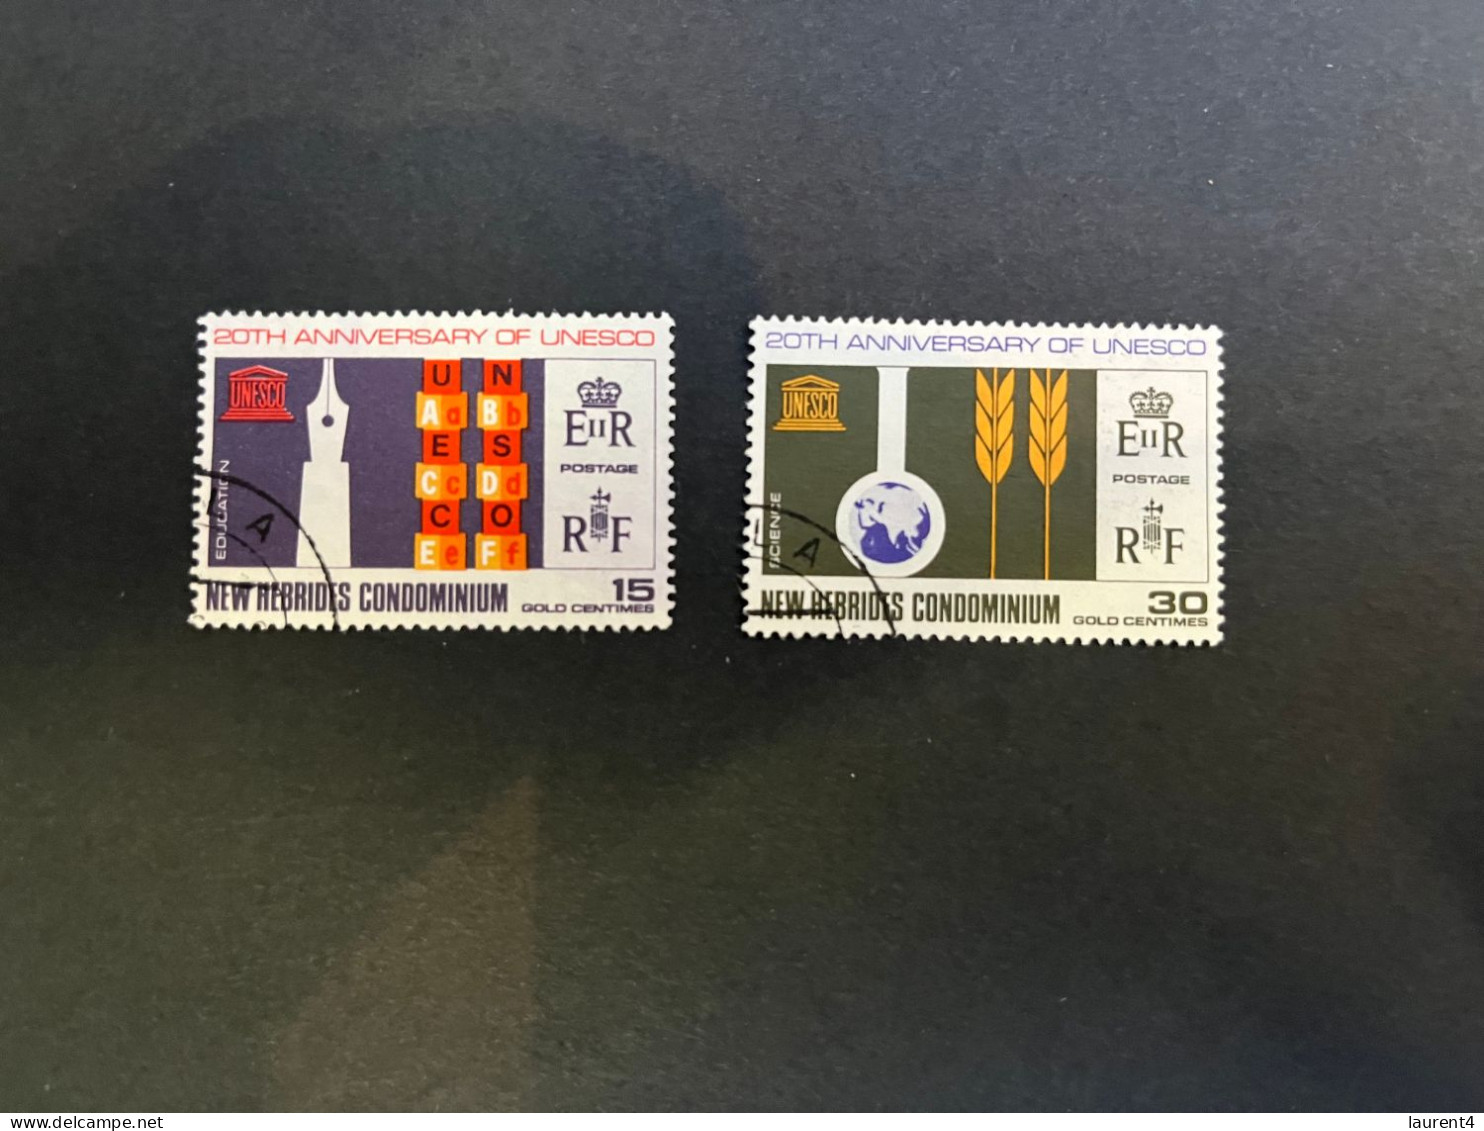 14-5-2024 (stamp) Used / Obliterer - 20th Anniversary UNESCO - New Hebrides Condominium (2 Values) - Vanuatu (1980-...)